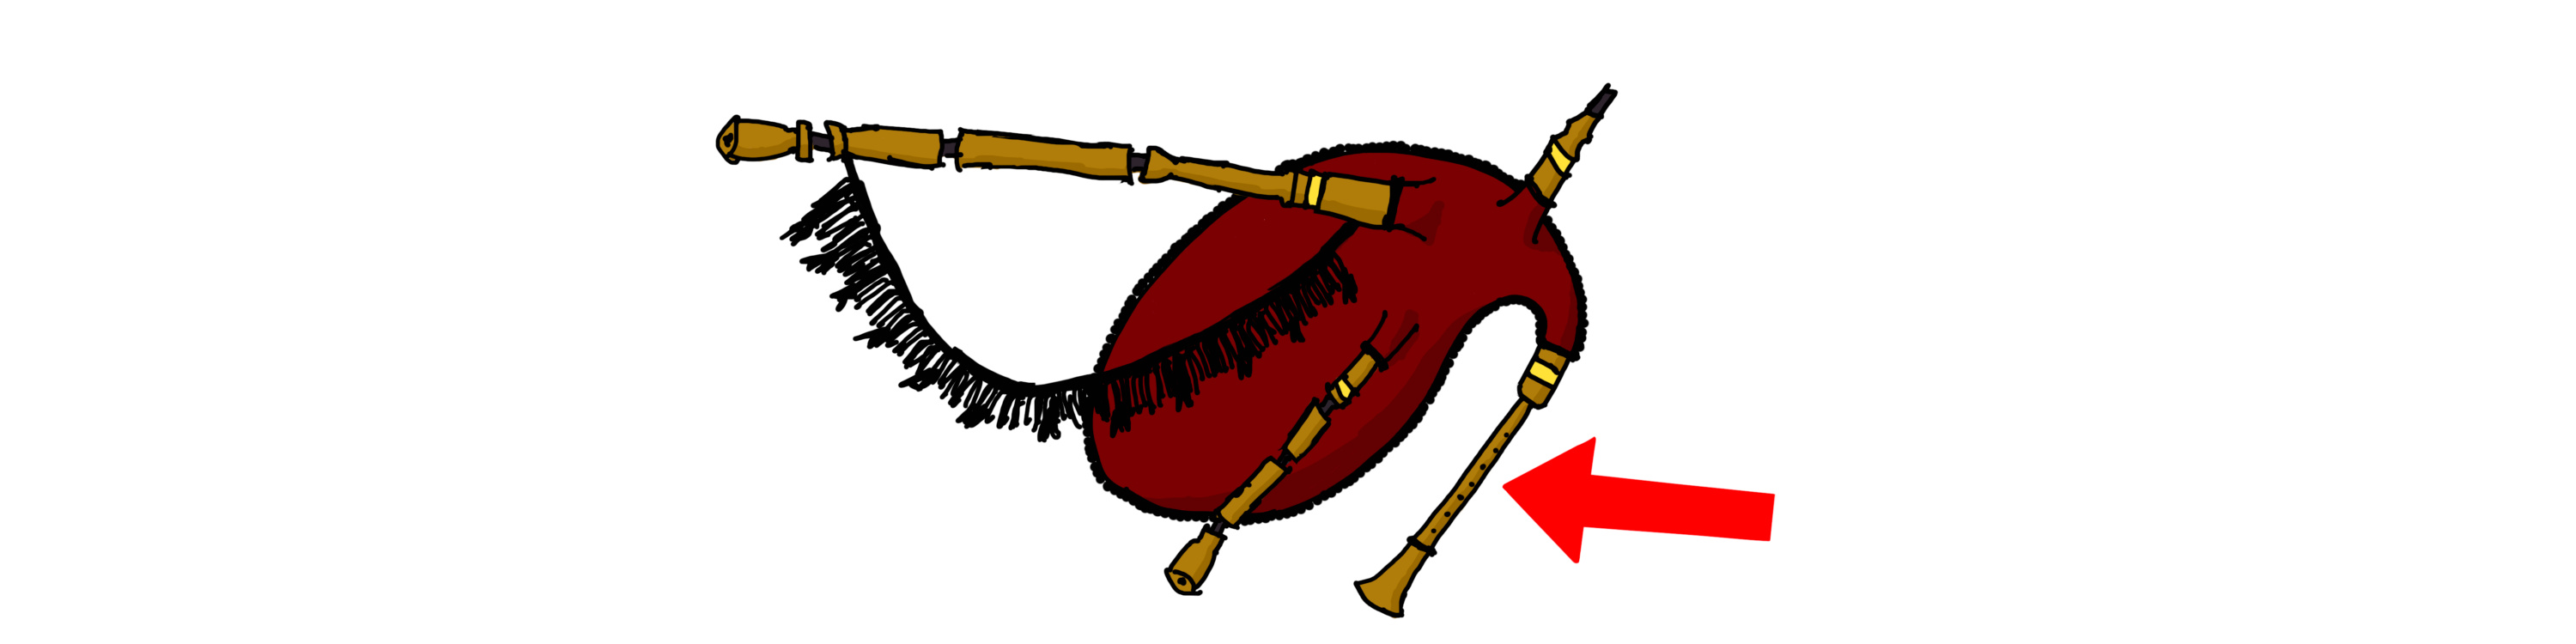 Unha gaita cunha frecha sinalando o punteiro.